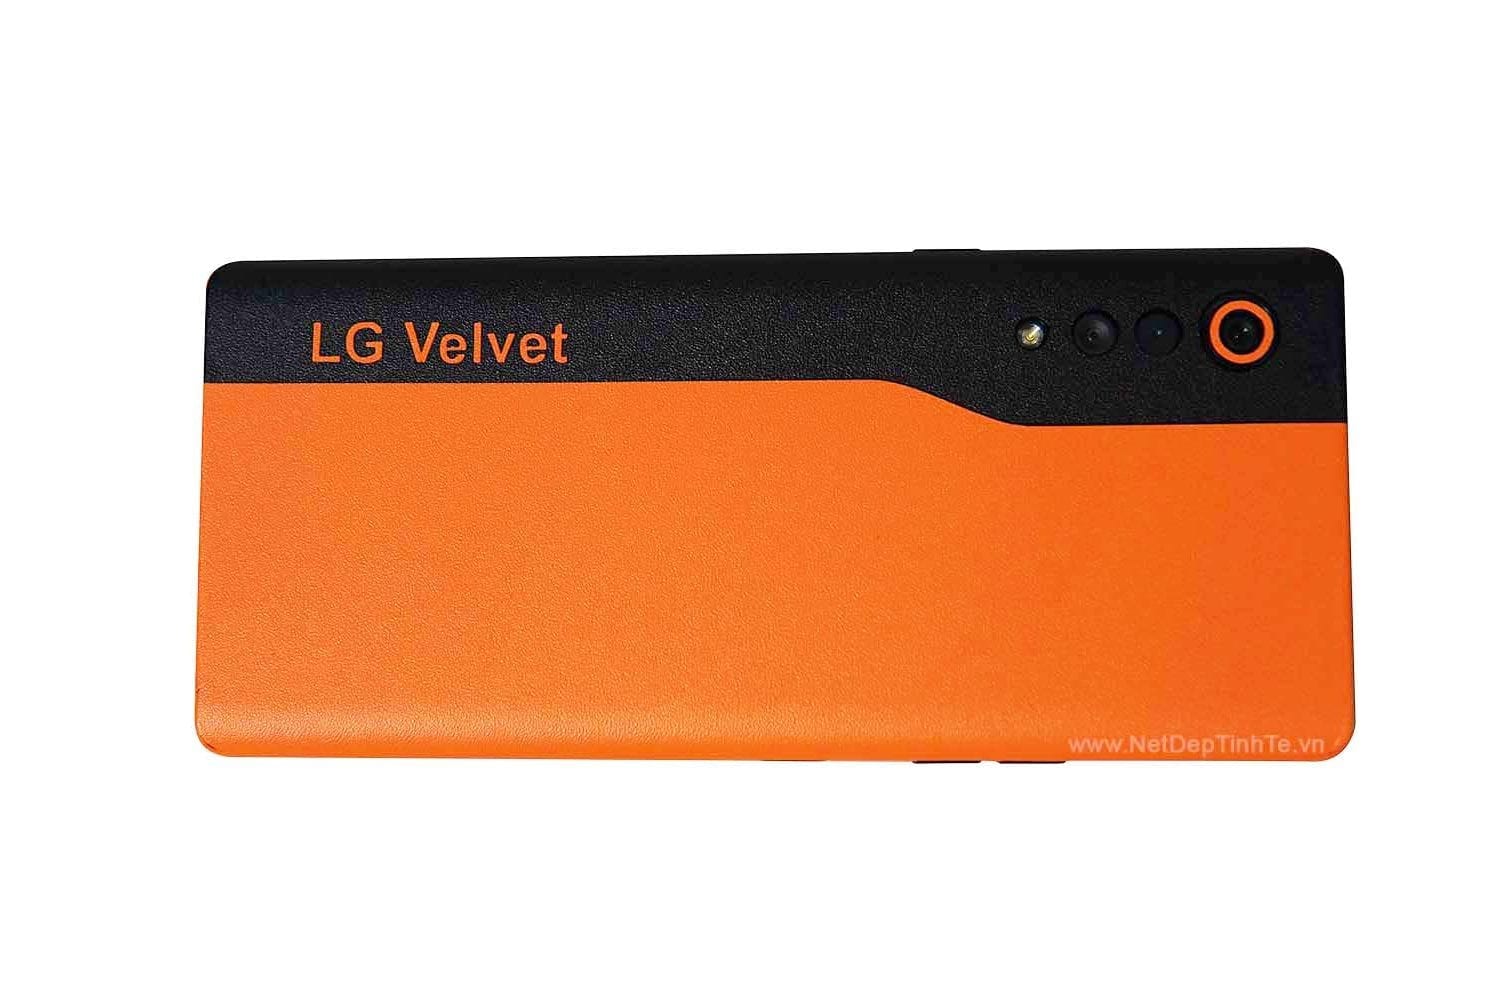 Skin film 3M điện thoại LG Velvet